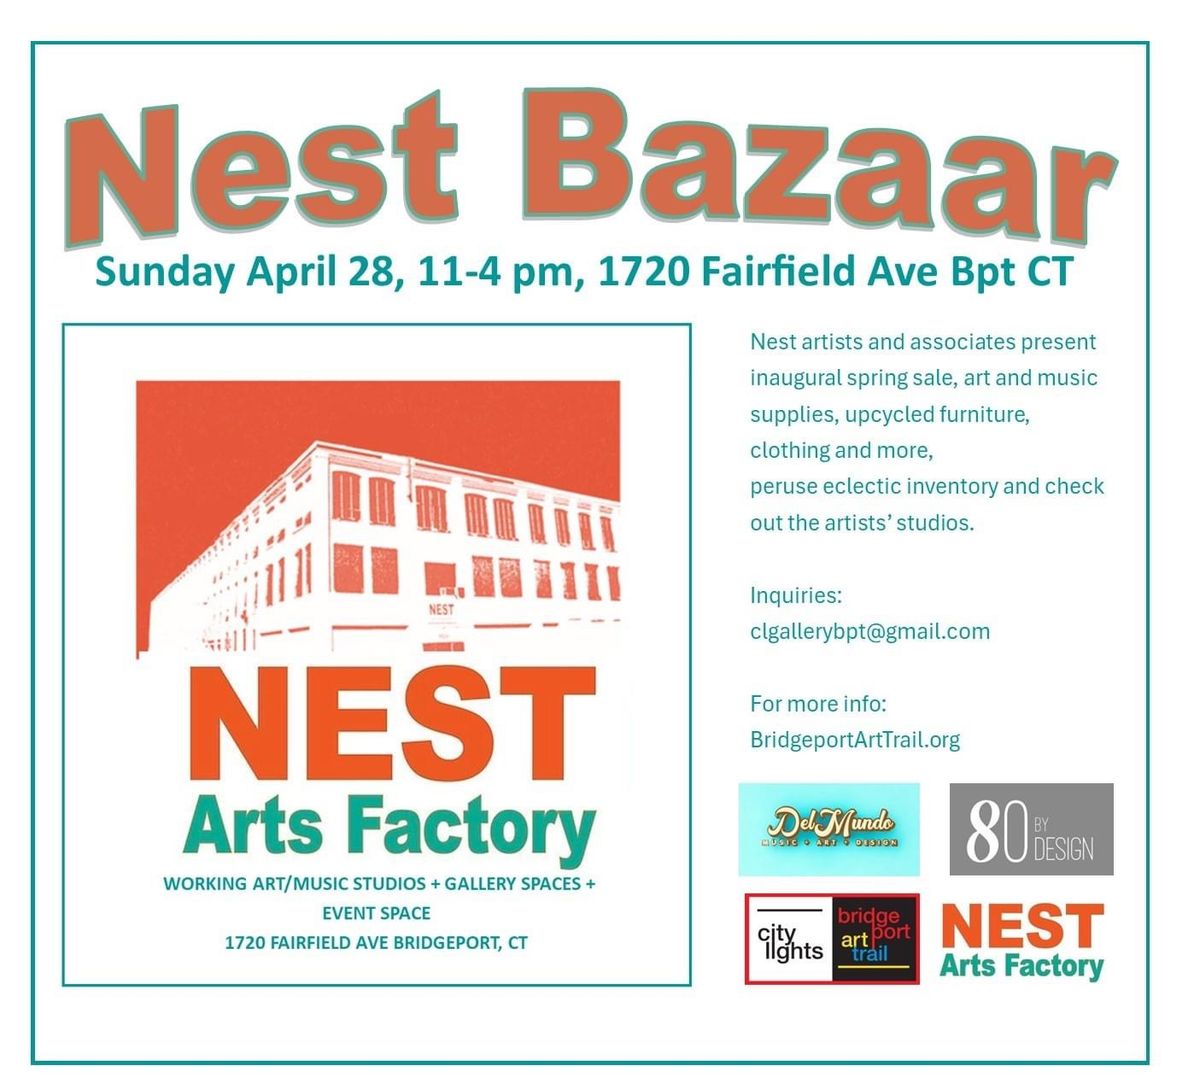 The Nest Bazaar